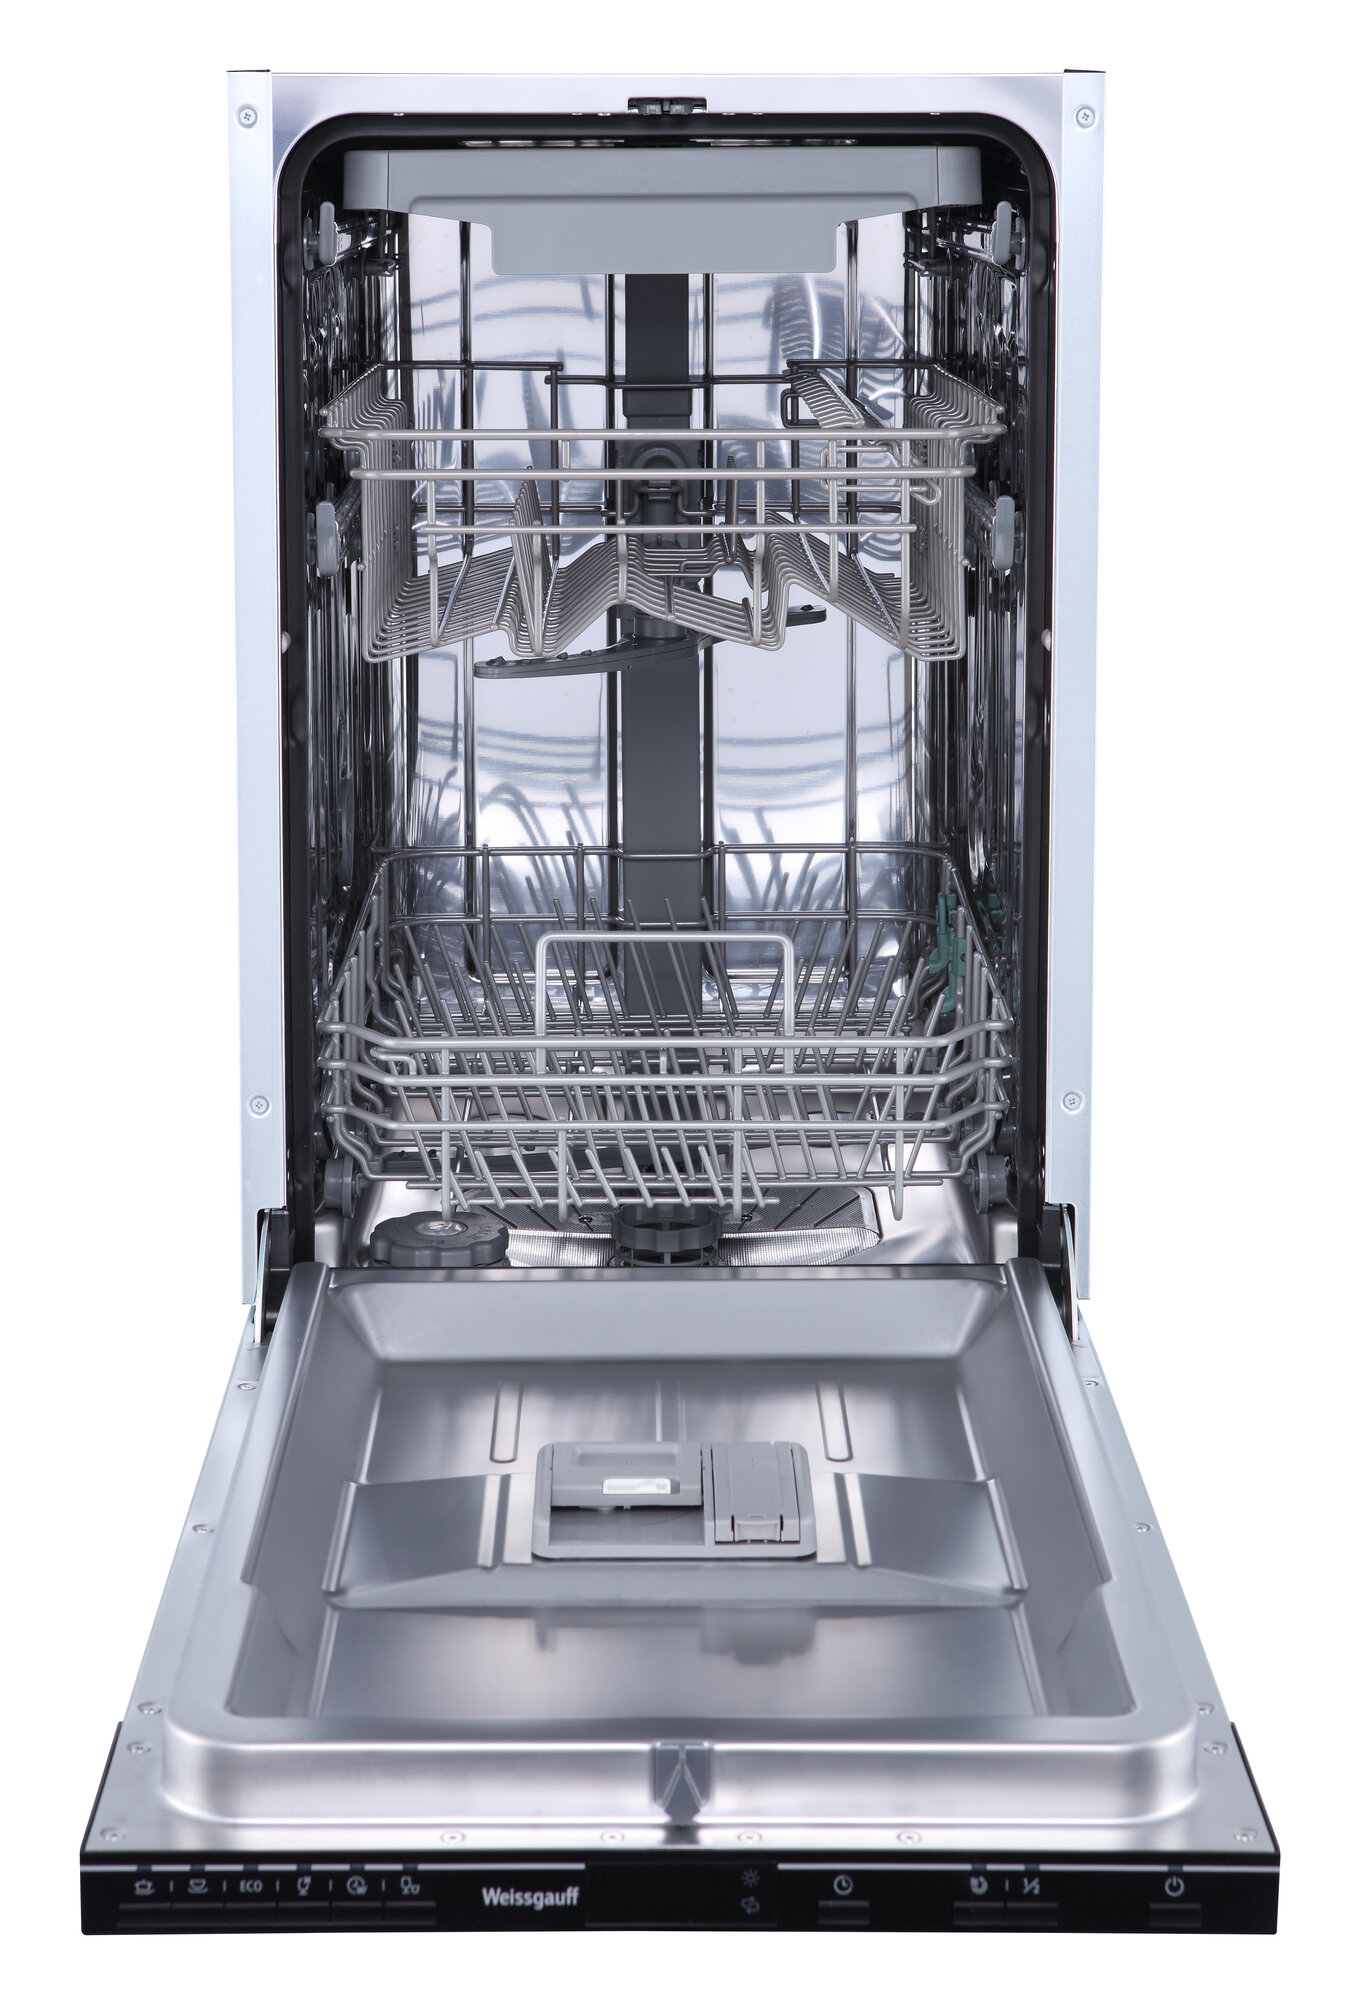 Встраиваемая посудомоечная машина Weissgauff BDW 4536 D,3 года гарантии, З корзины, Дисплей, Электронное управление, 10 комплектов, 6 программ, Быстрая мойка, Половинная загрузка, Тихий режим работы